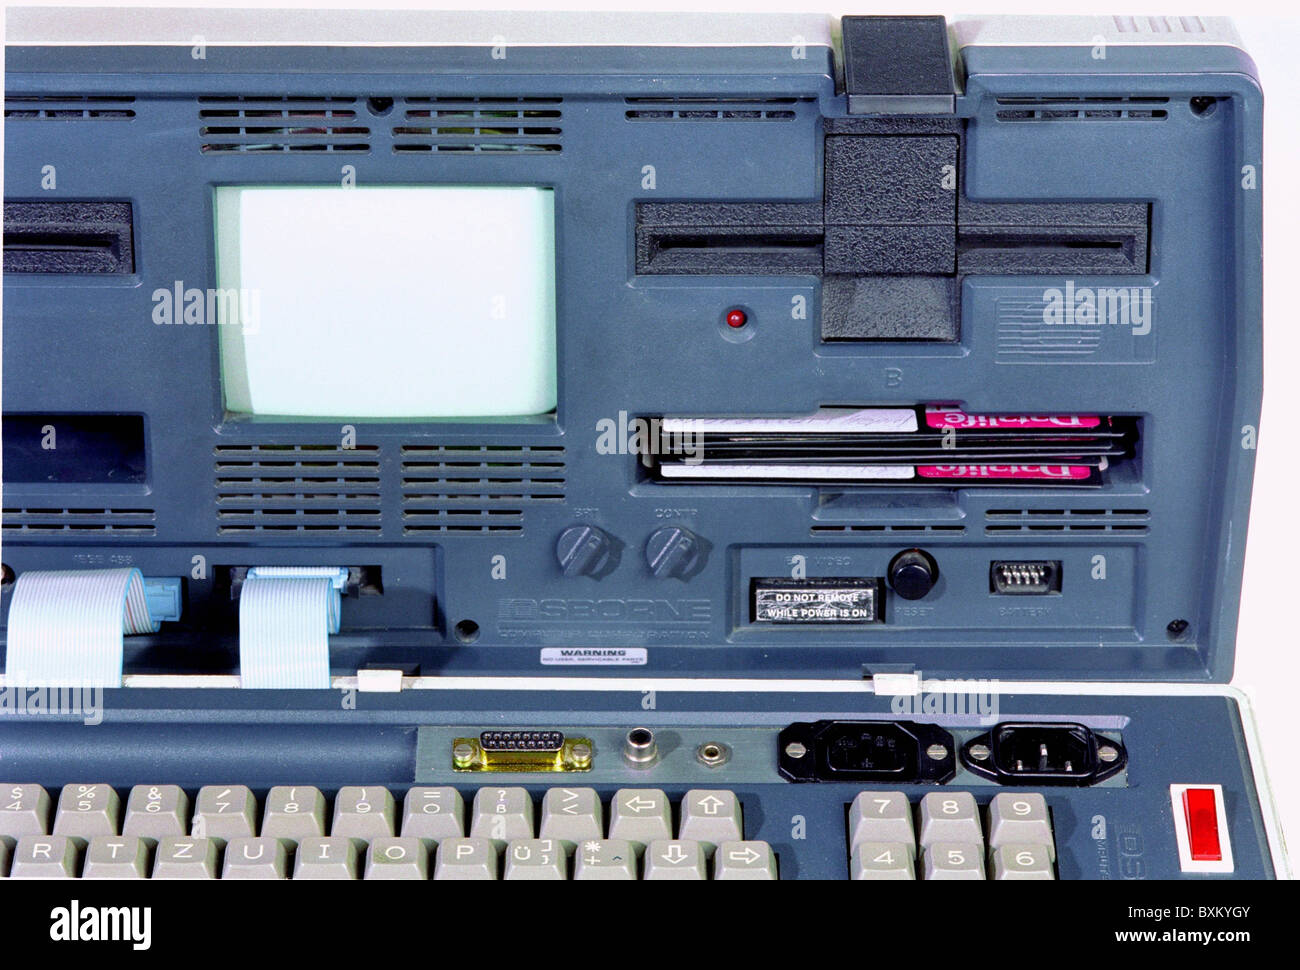 Informatique / électronique, ordinateur, ordinateur portable, Osborne-1, premier ordinateur portable, détail, USA, 1981, droits supplémentaires-Clearences-non disponible Banque D'Images